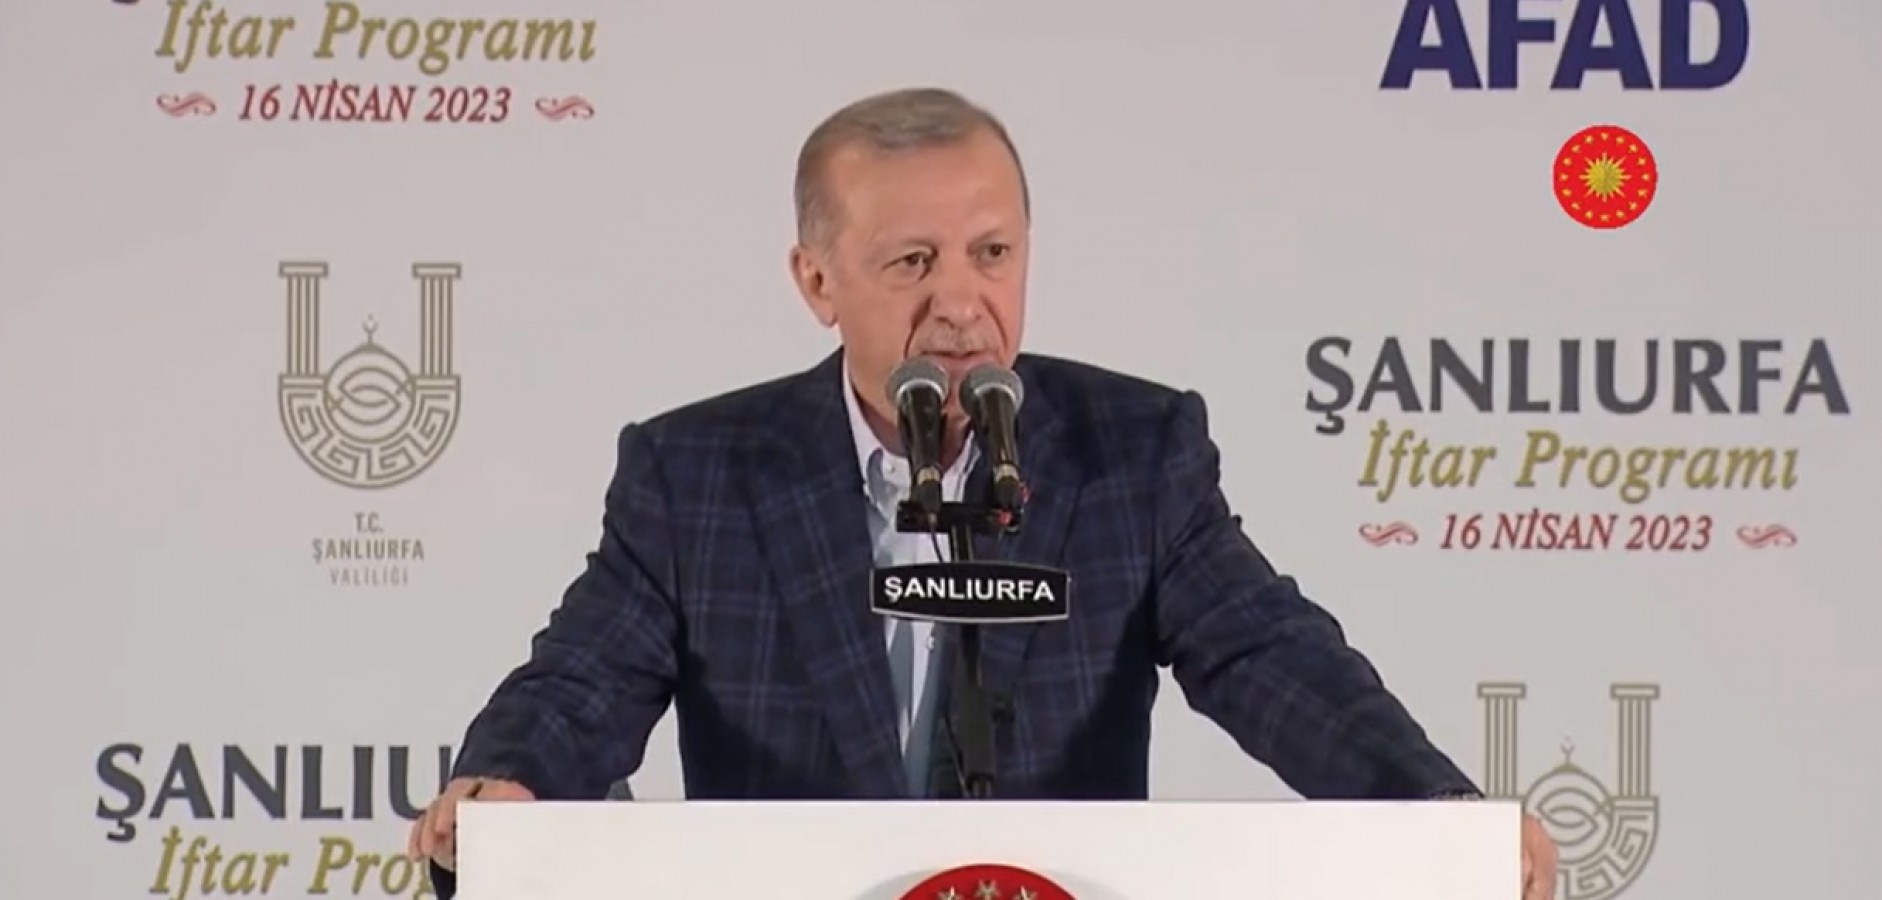 Cumhurbaşkanı Erdoğan'dan Urfa'da Kılıçdaroğlu'na eleştiri: Tefeciler...;